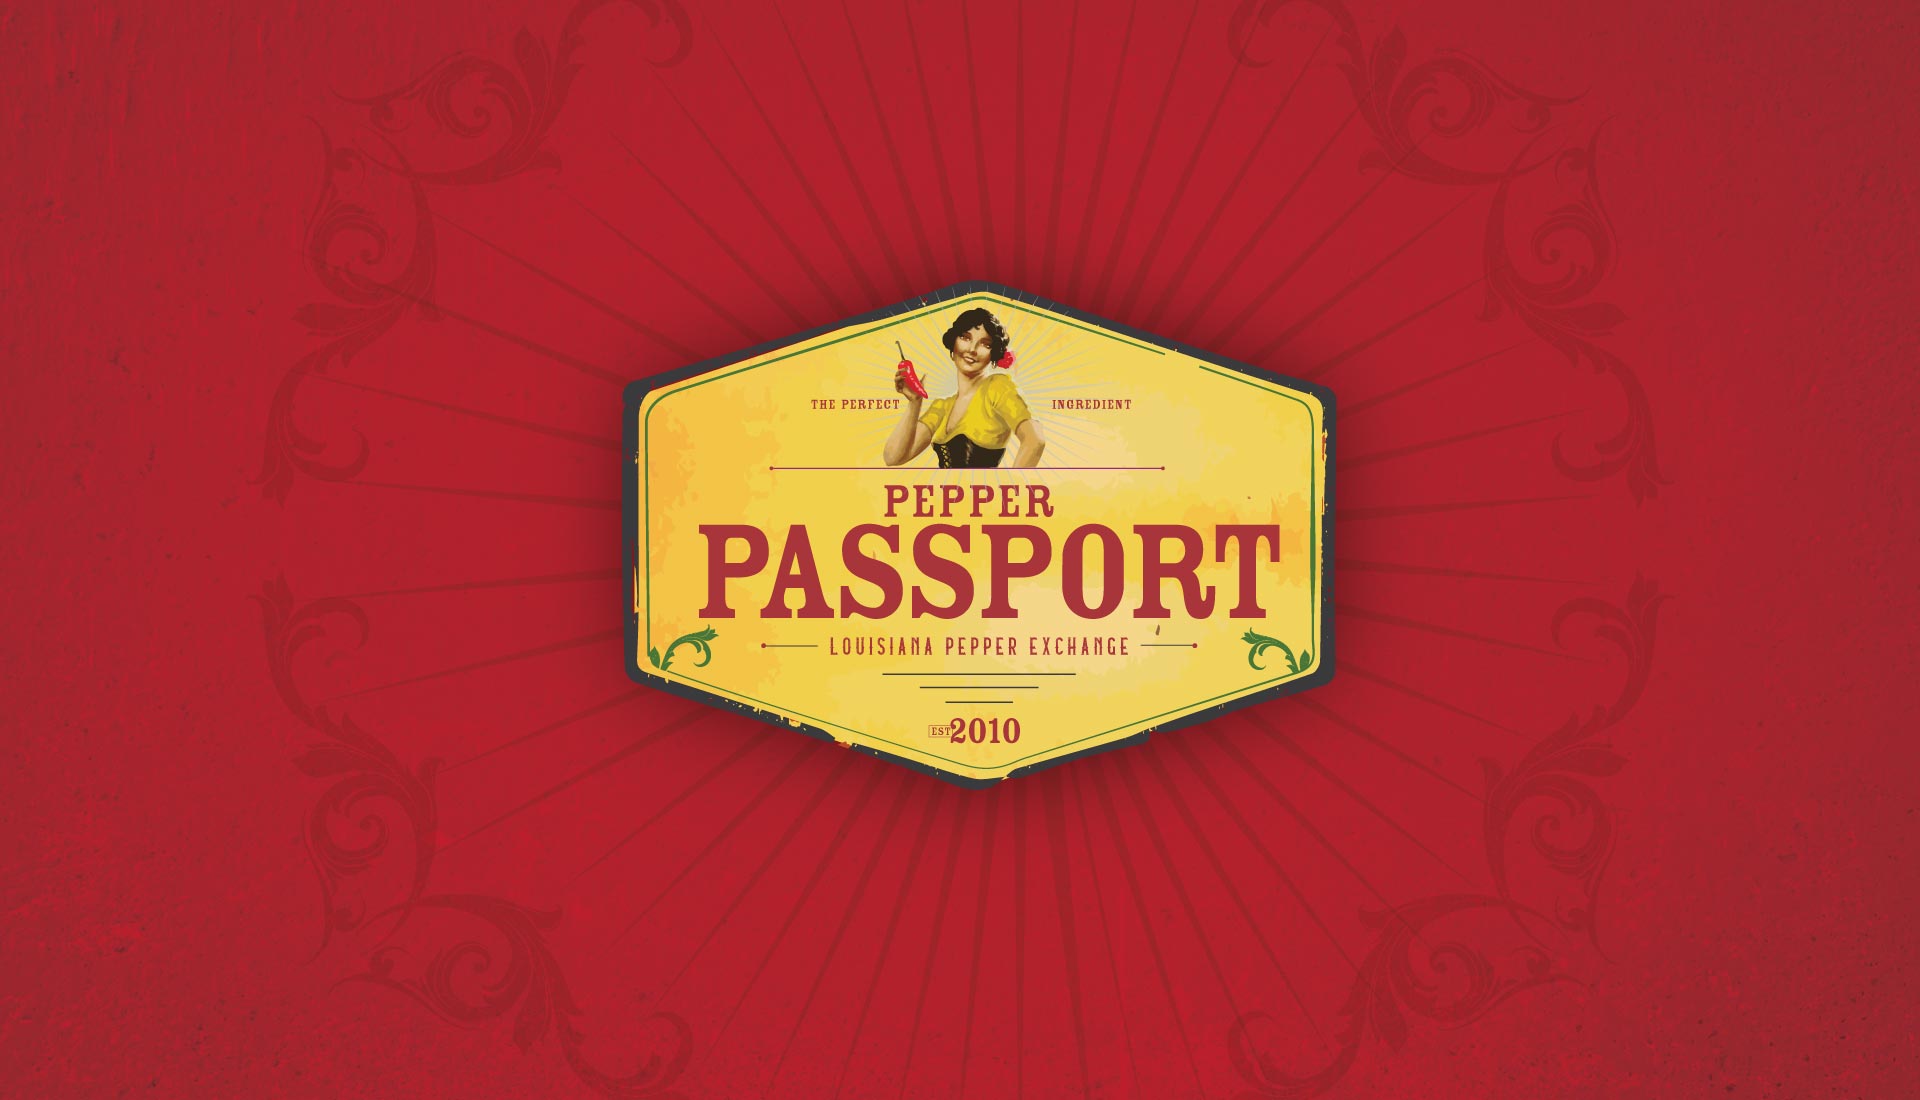 La Pepper Passport brochure